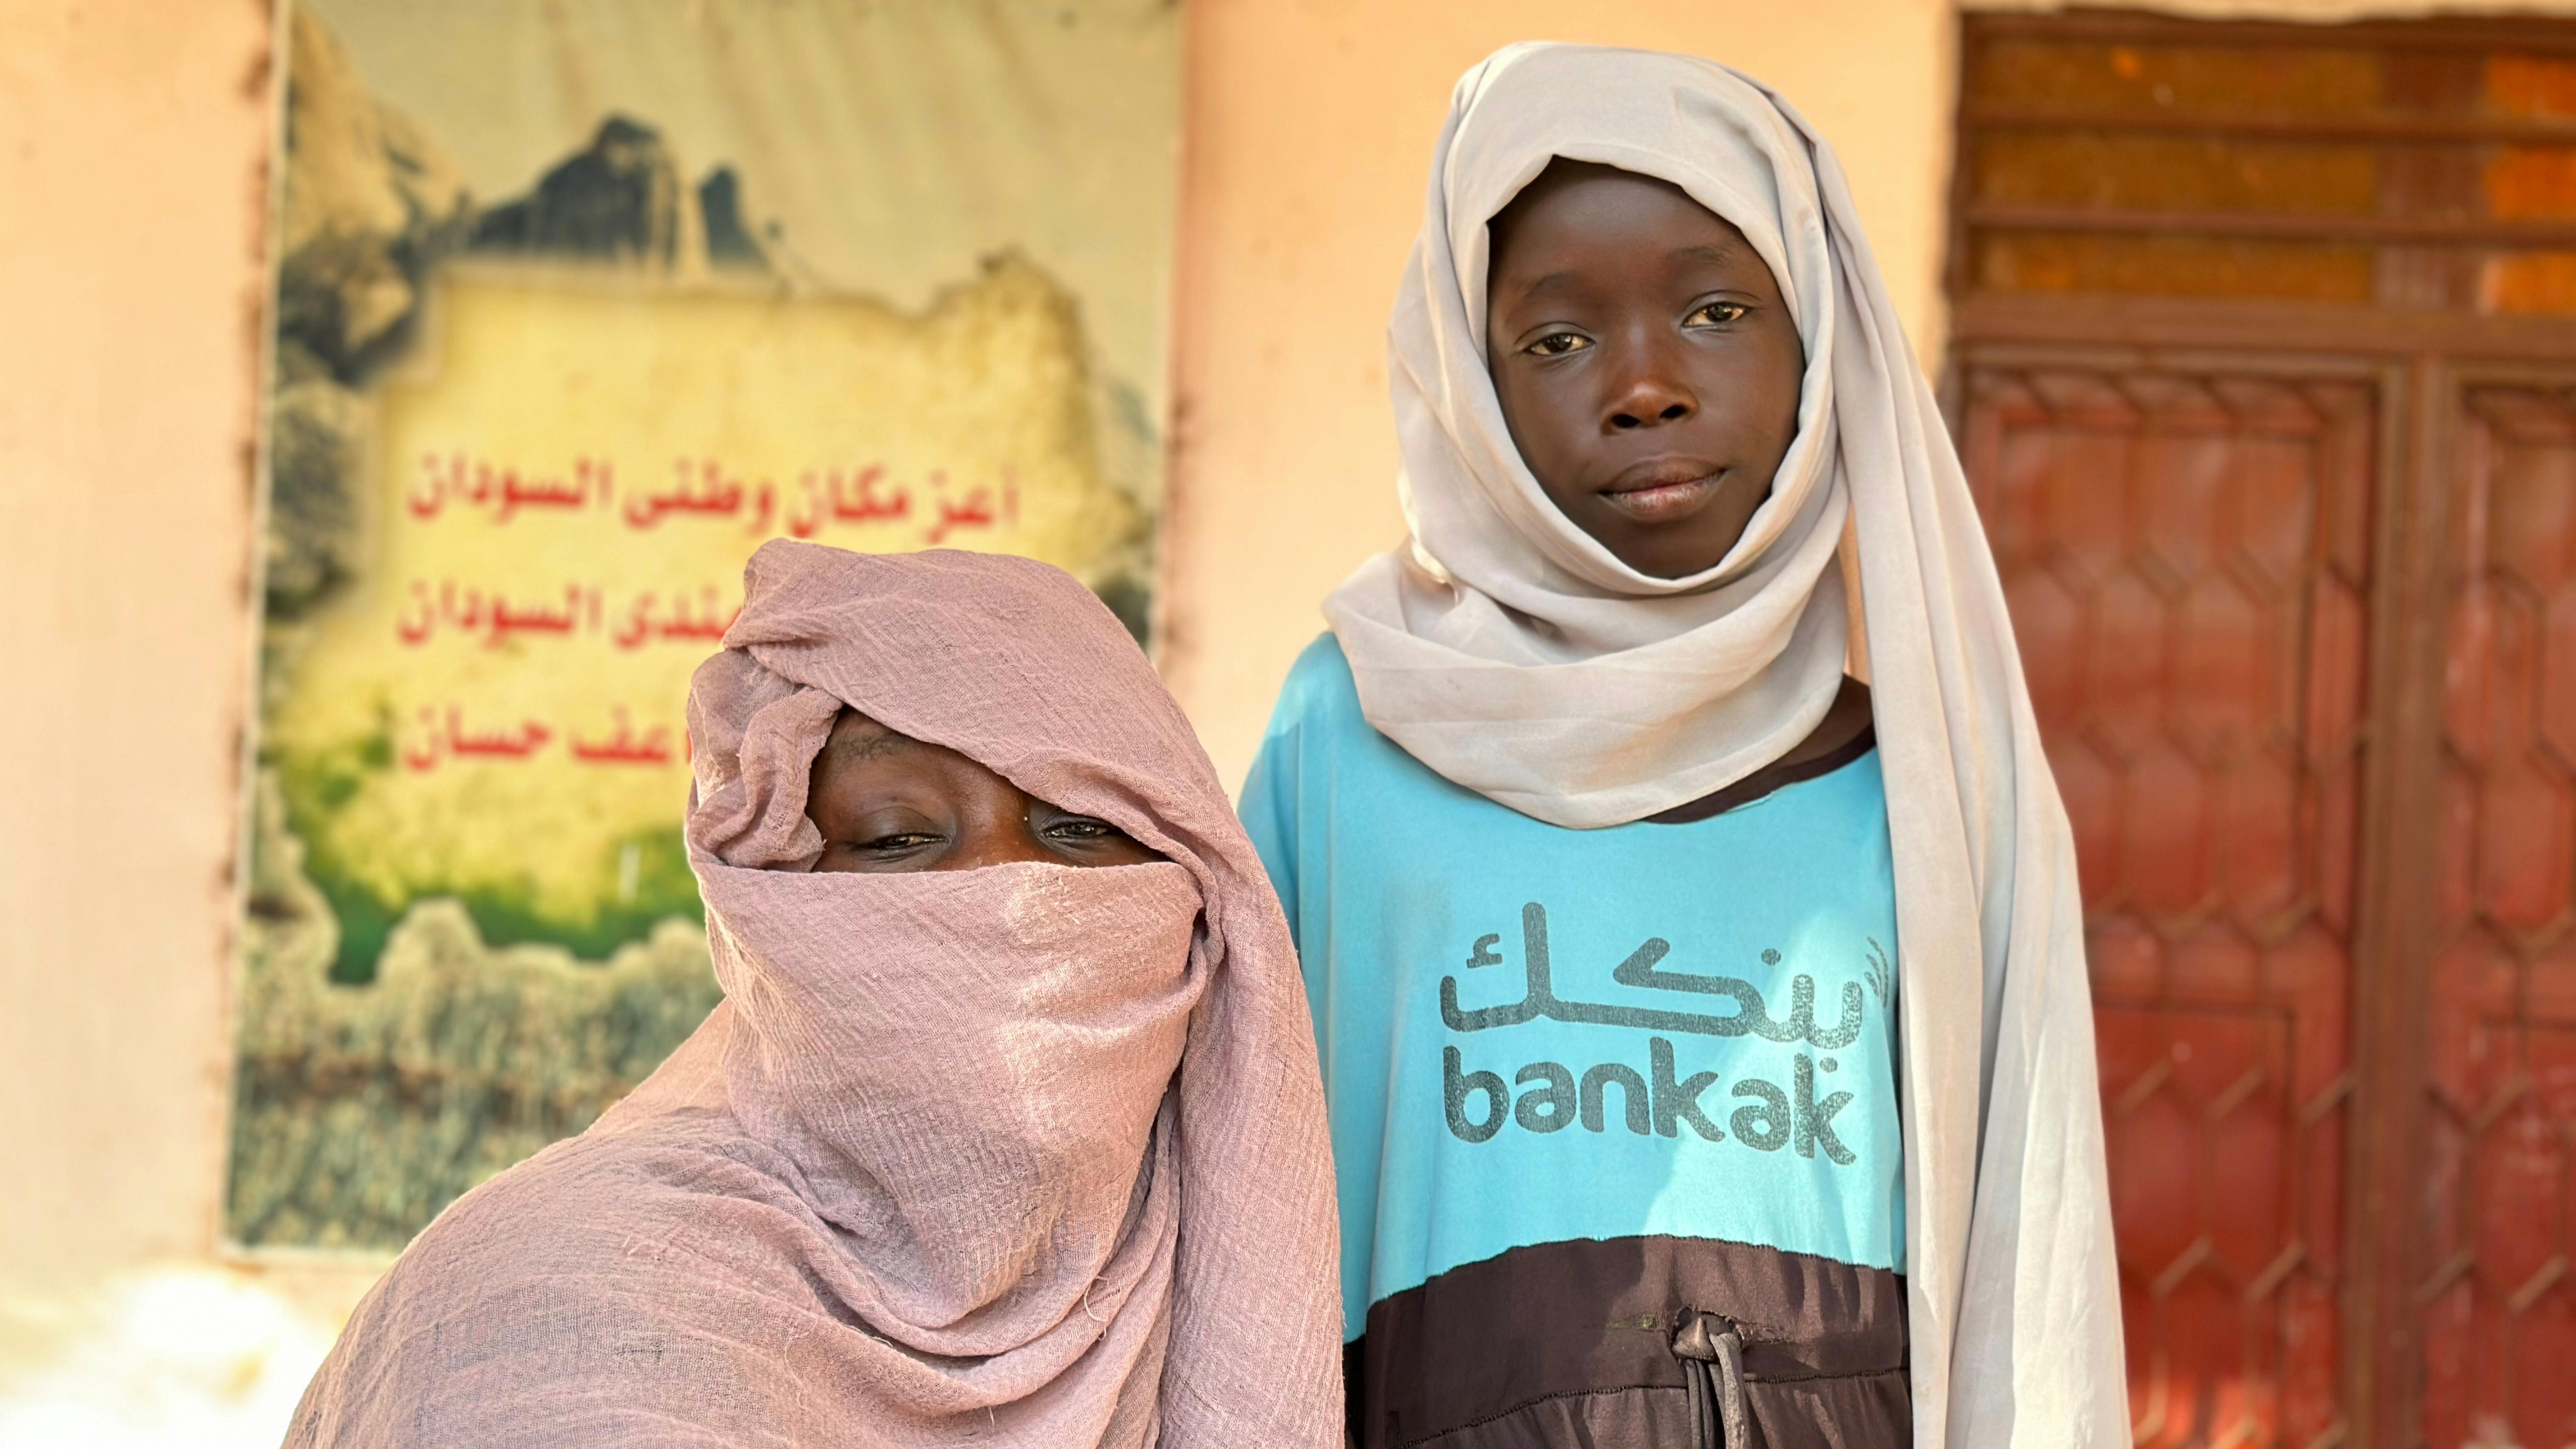 “Non vedo nessun futuro per me” Tawassul, 12 anni. Lei e sua madre sono sfollate di nuovo in seguito ai recenti scontri scoppiati a Gezira, in Sudan